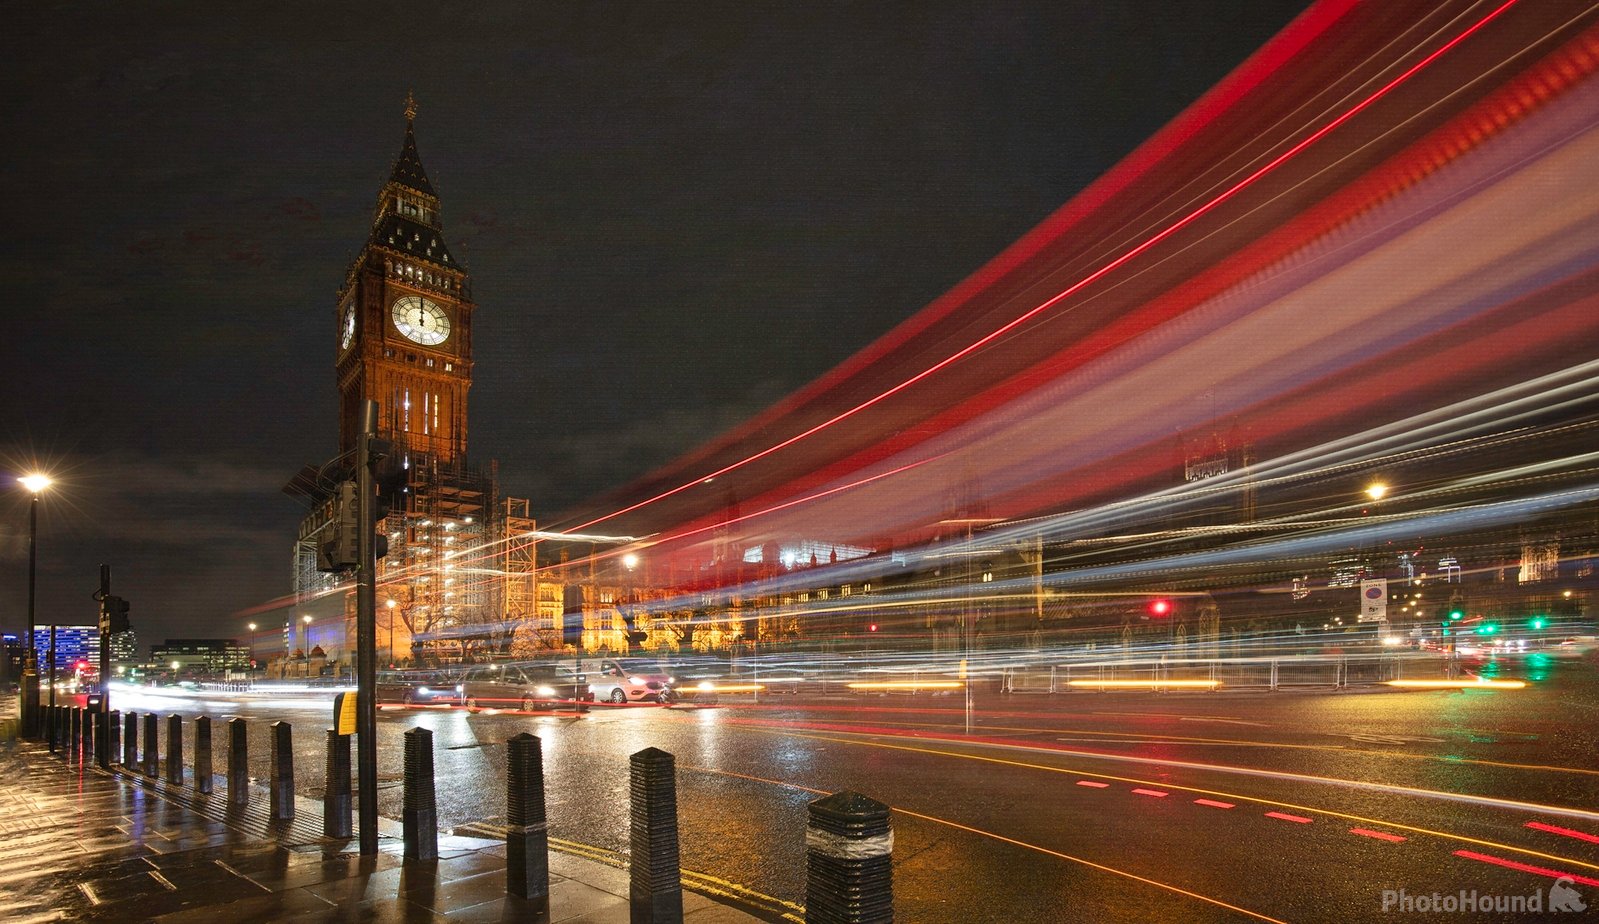 Image of Westminster Bridge by Paul James